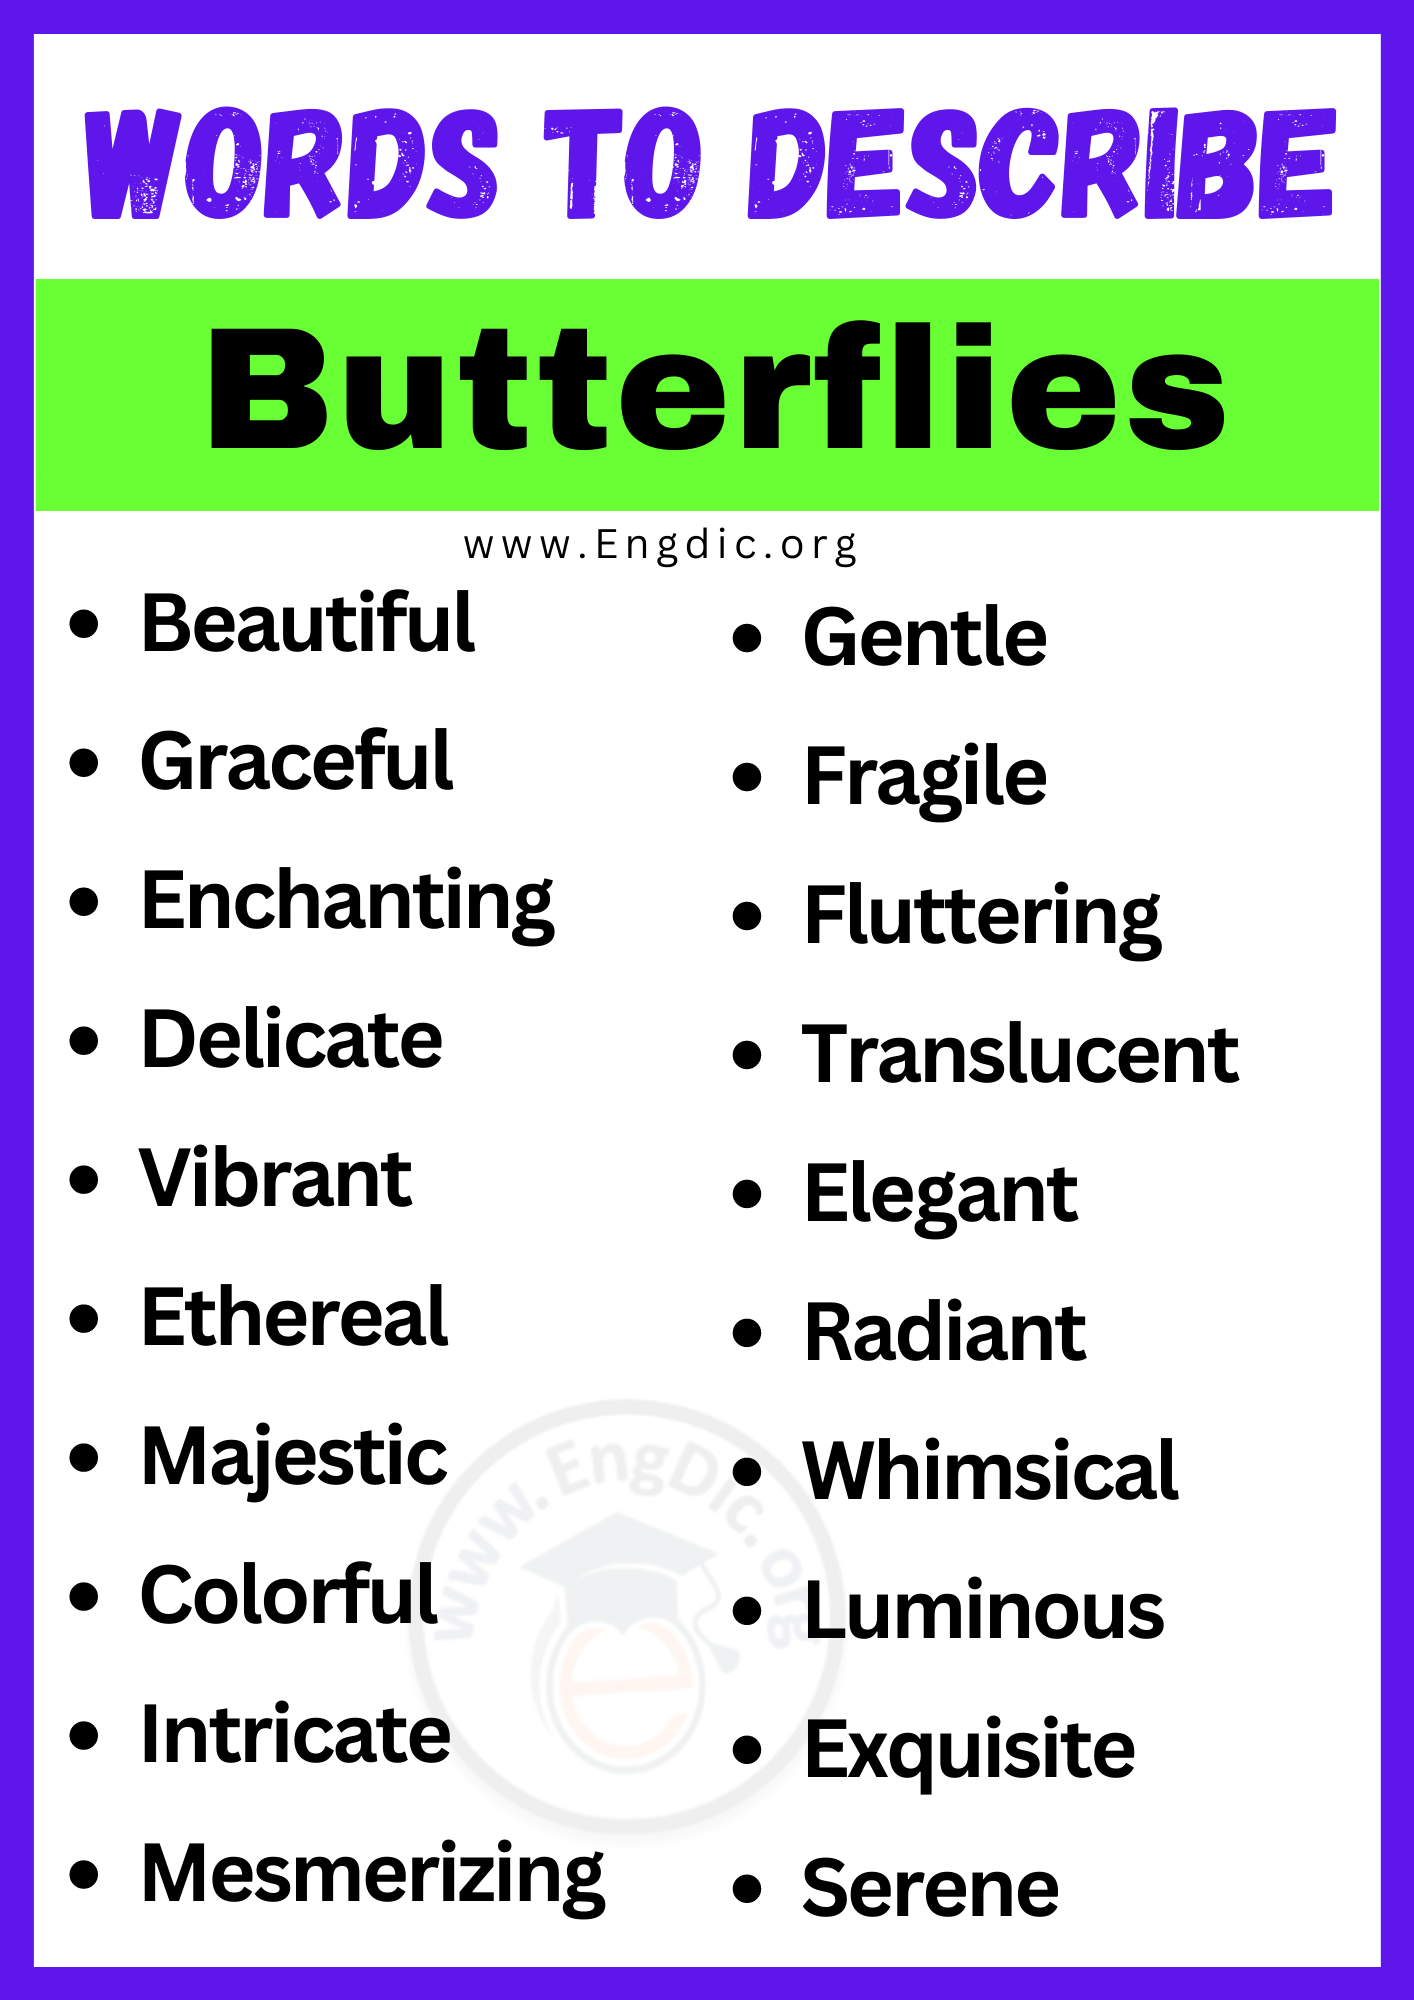 Words to Describe Butterflies